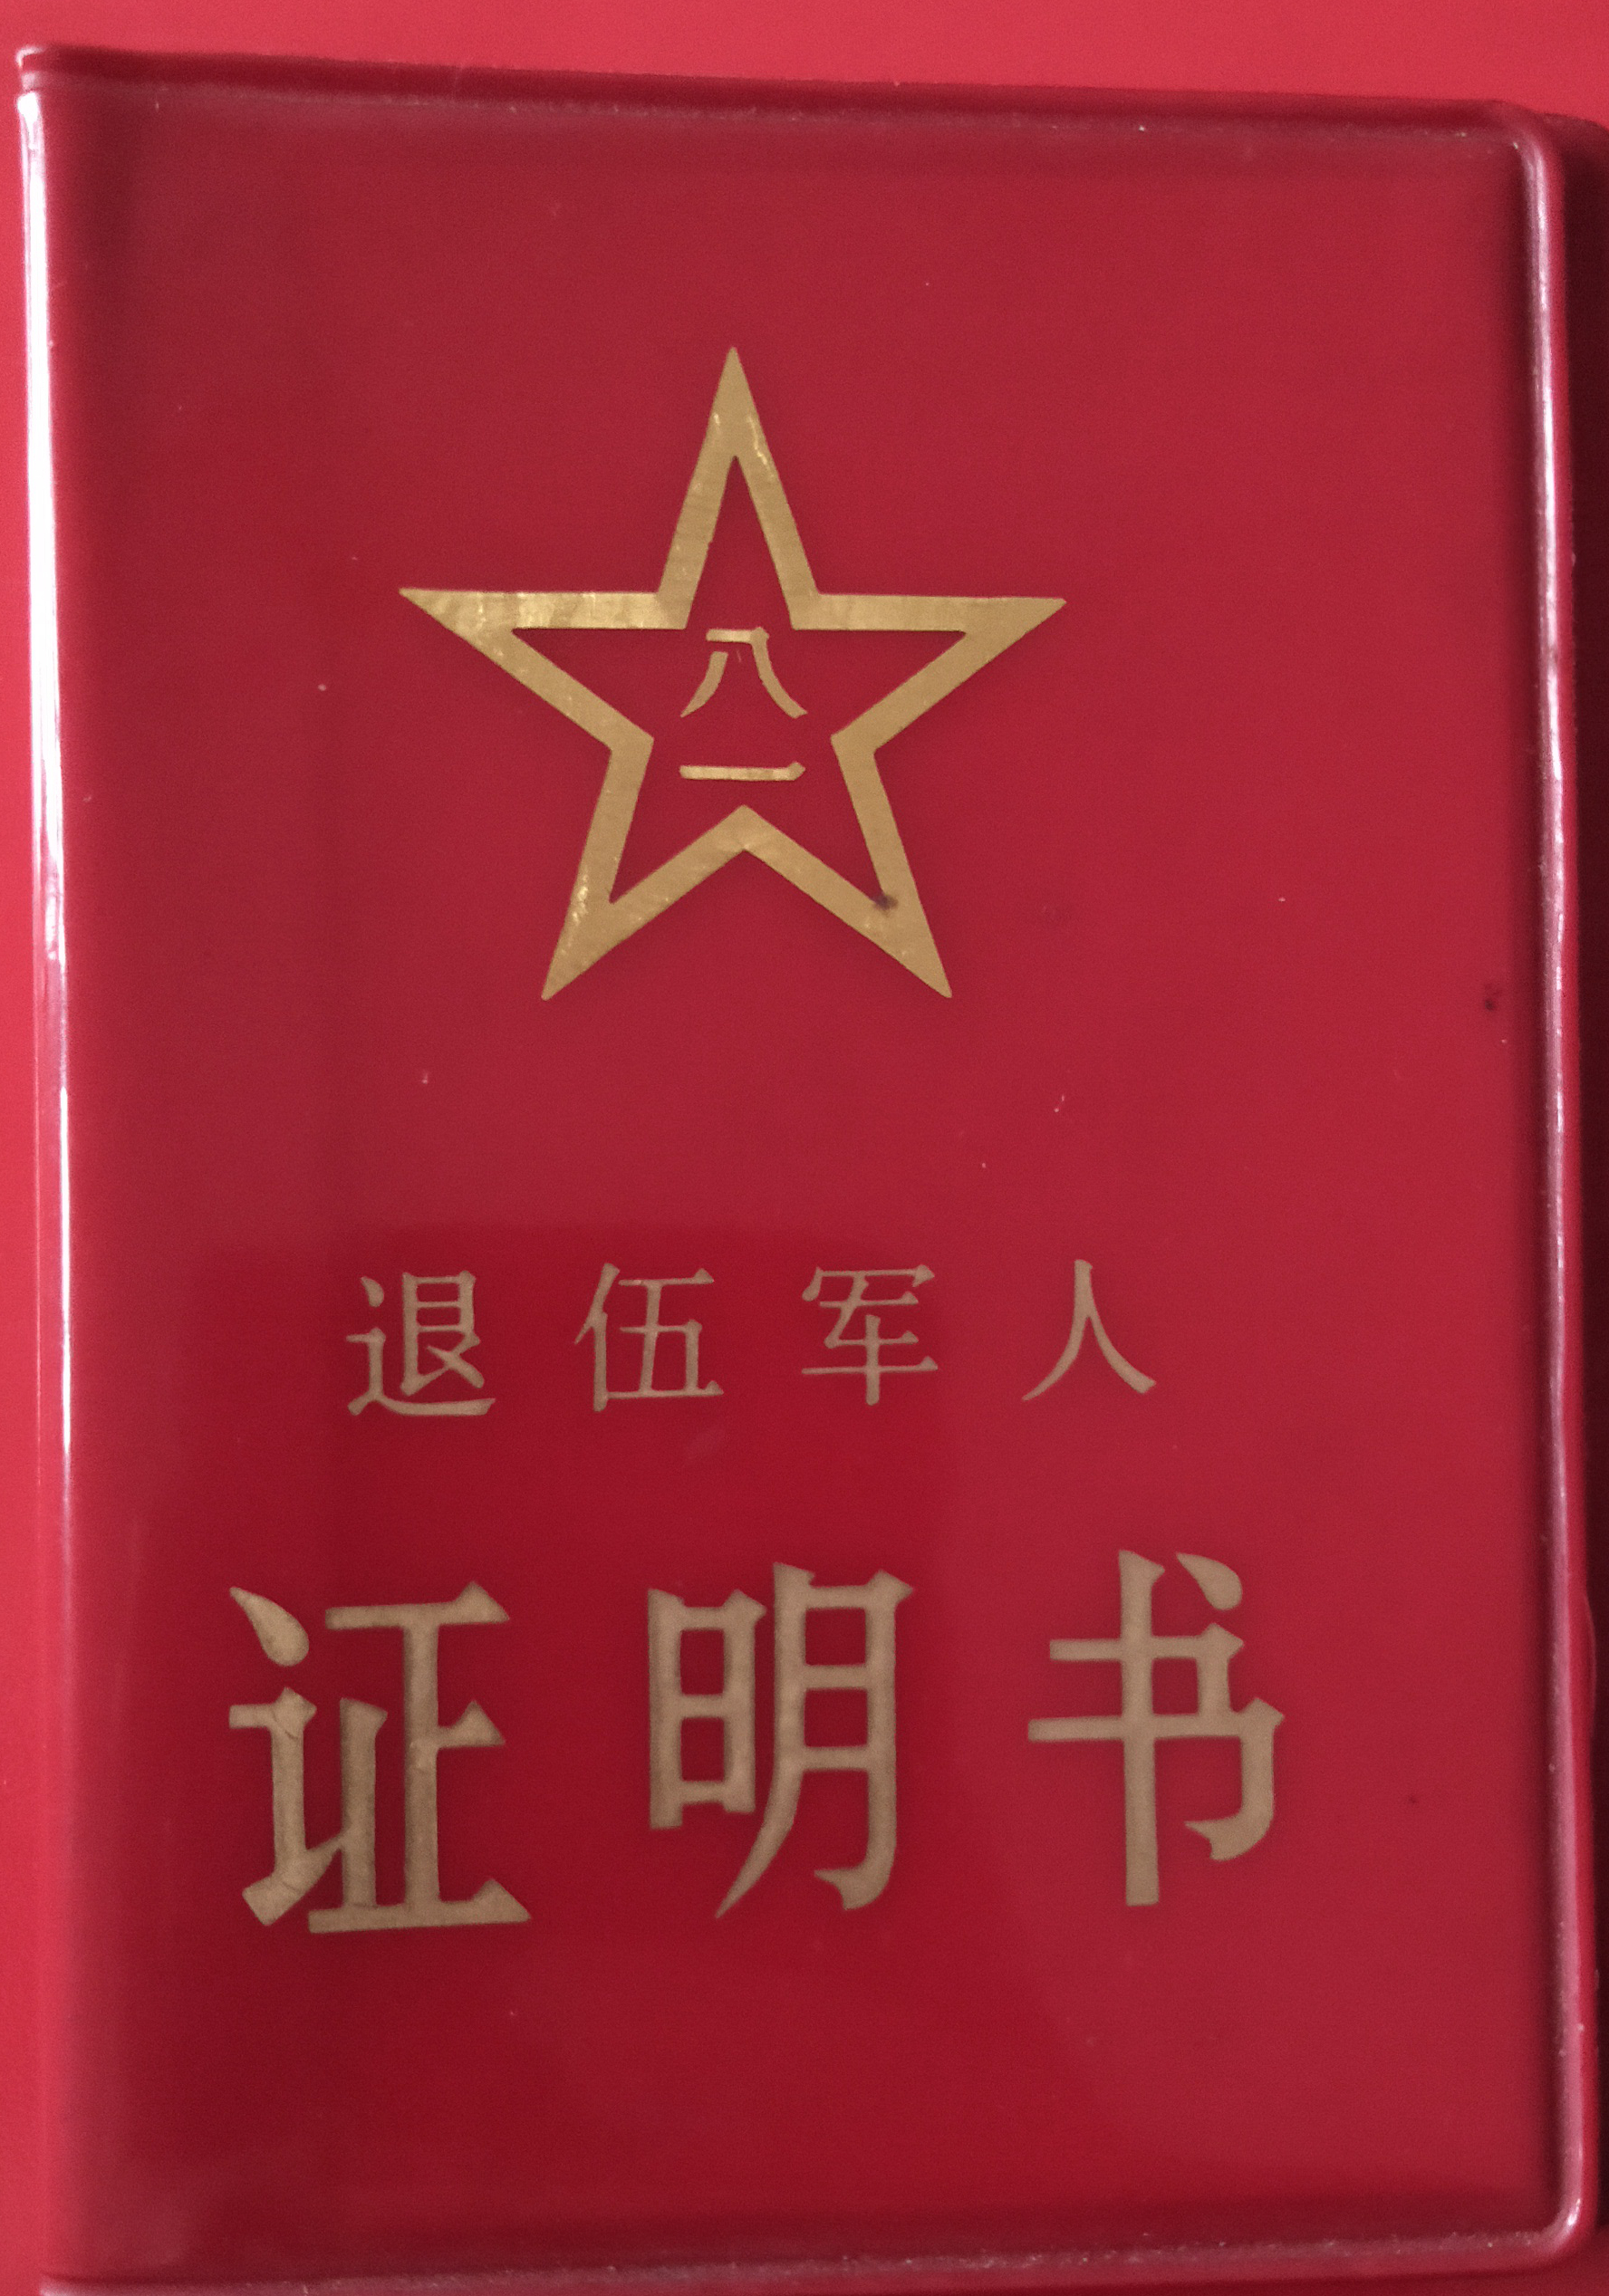 中国红色文化研究会老山精神专业委员会